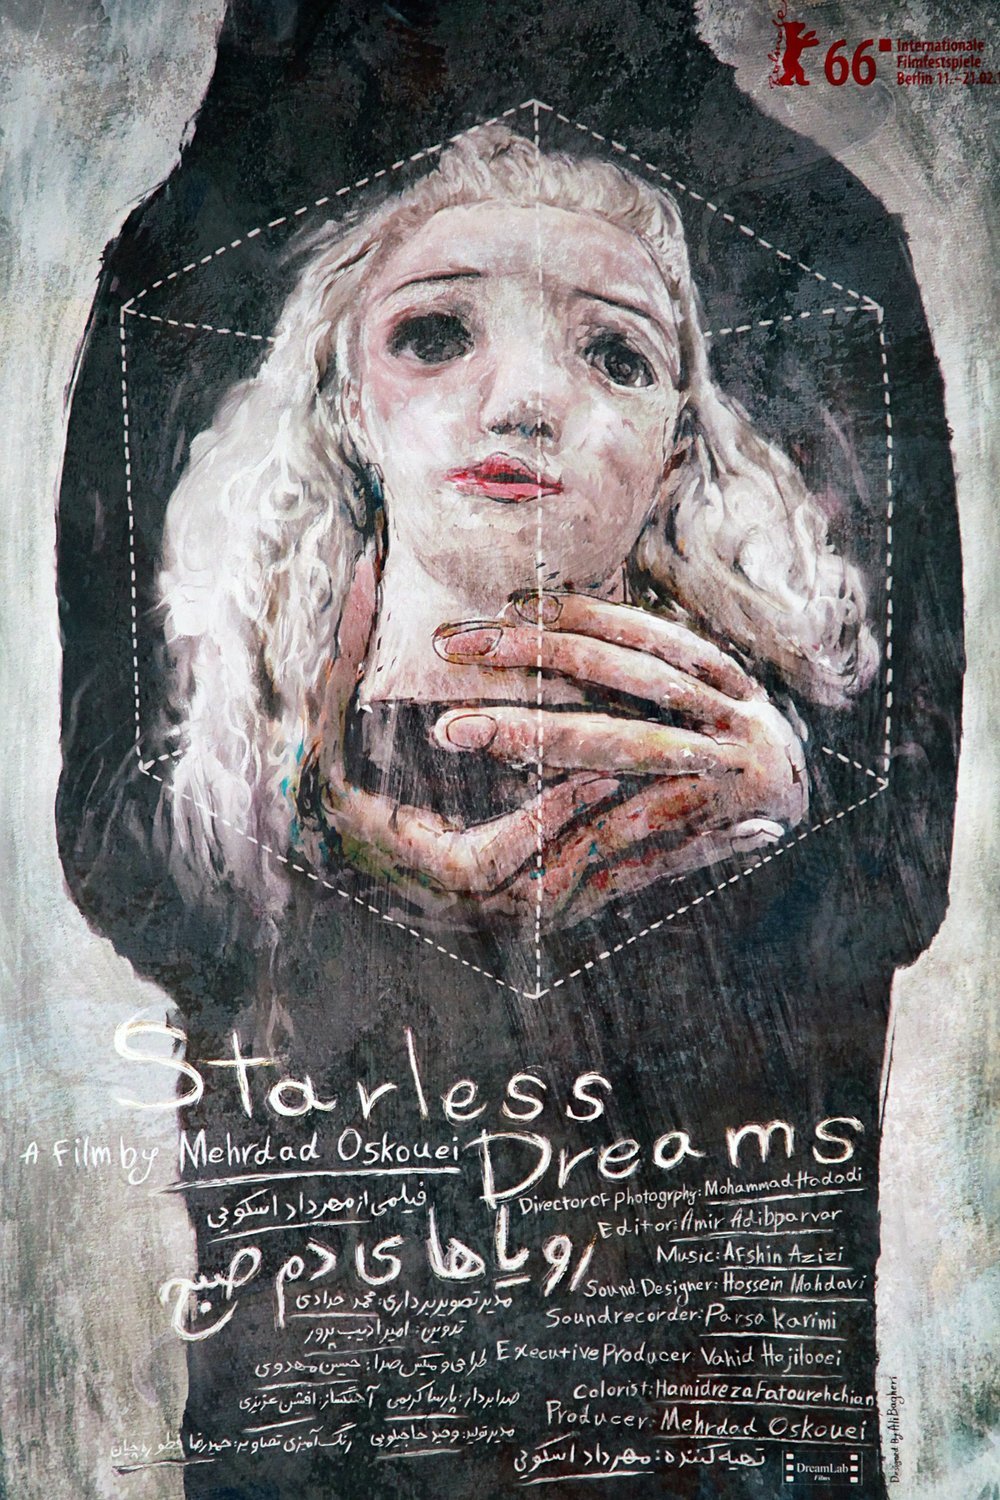 L'affiche du film Starless Dreams